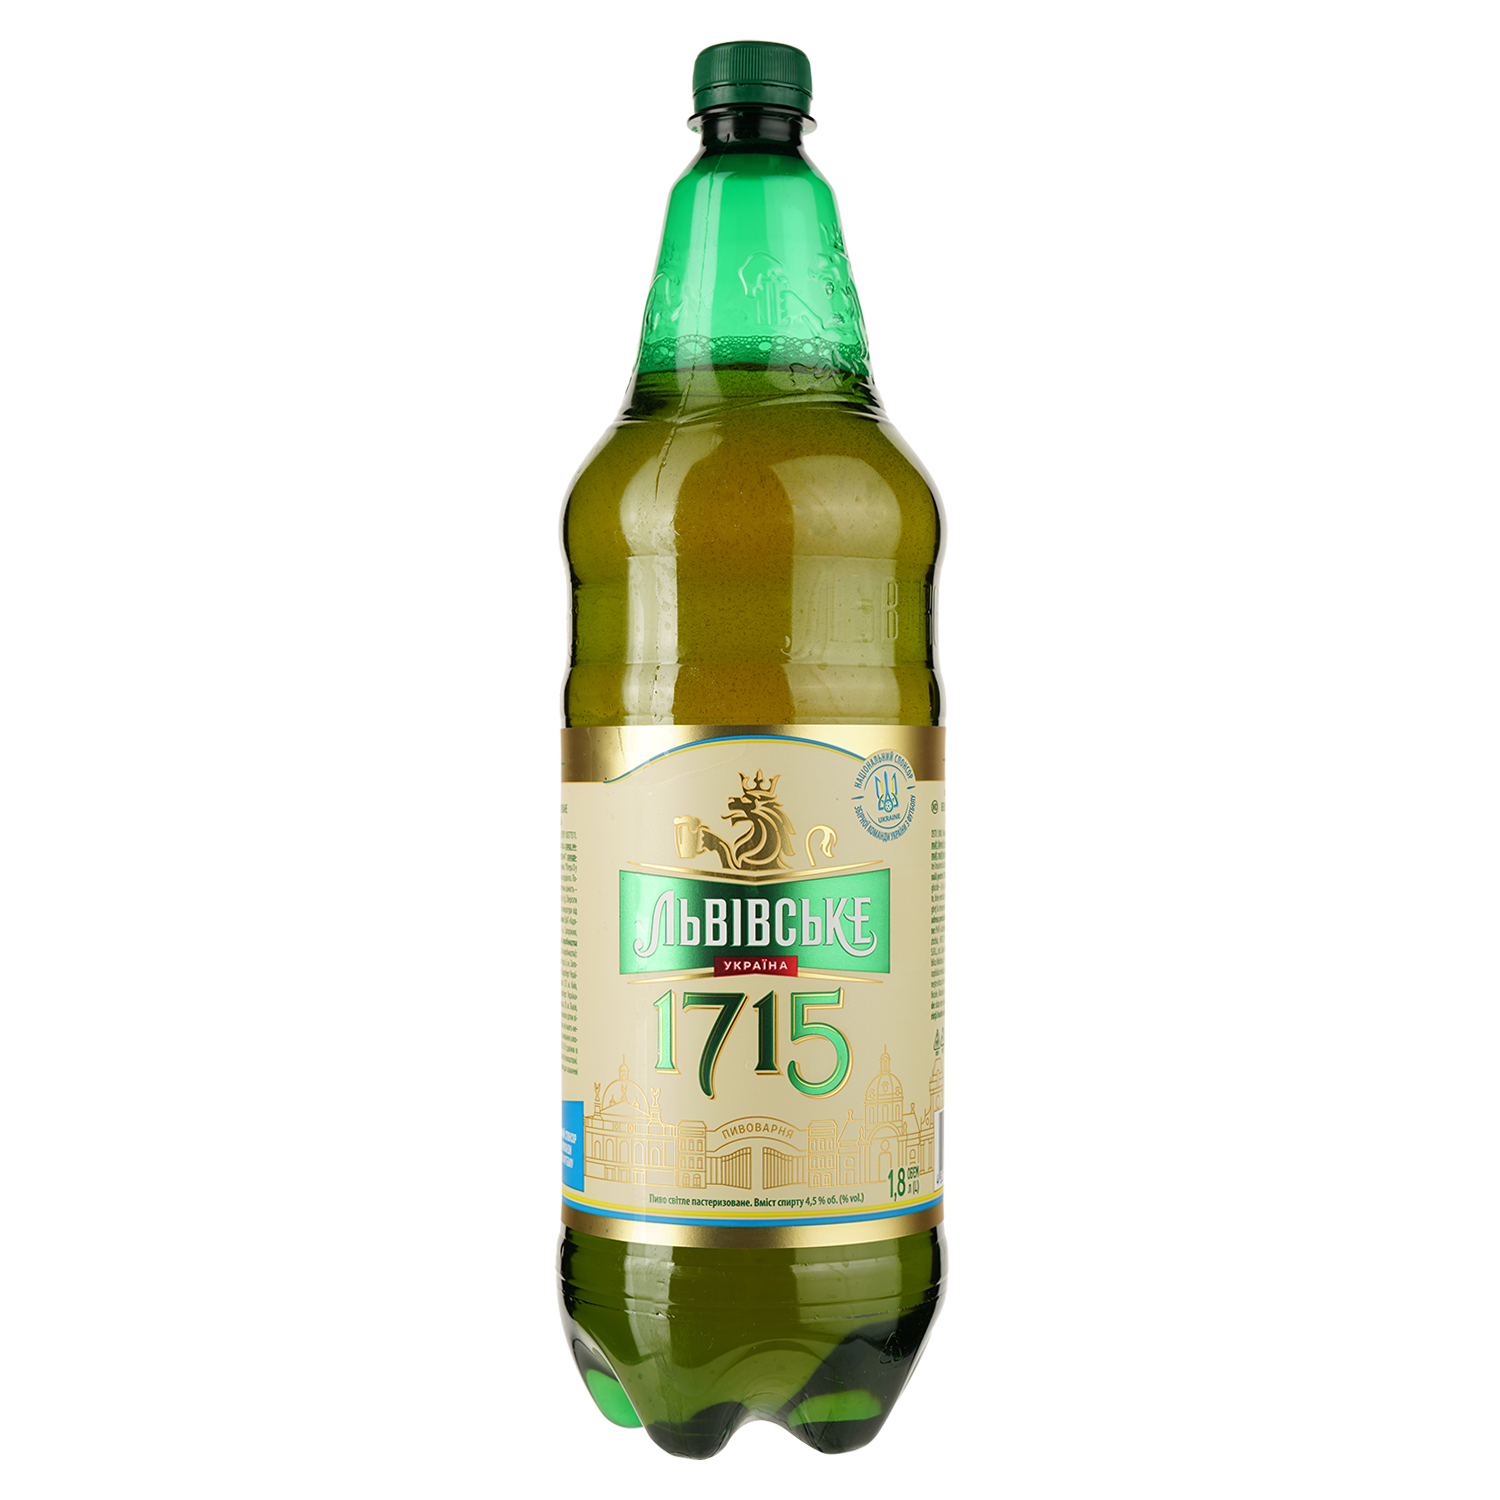 Пиво Львівське 1715 светлое 4.5% 1.8 л - фото 1